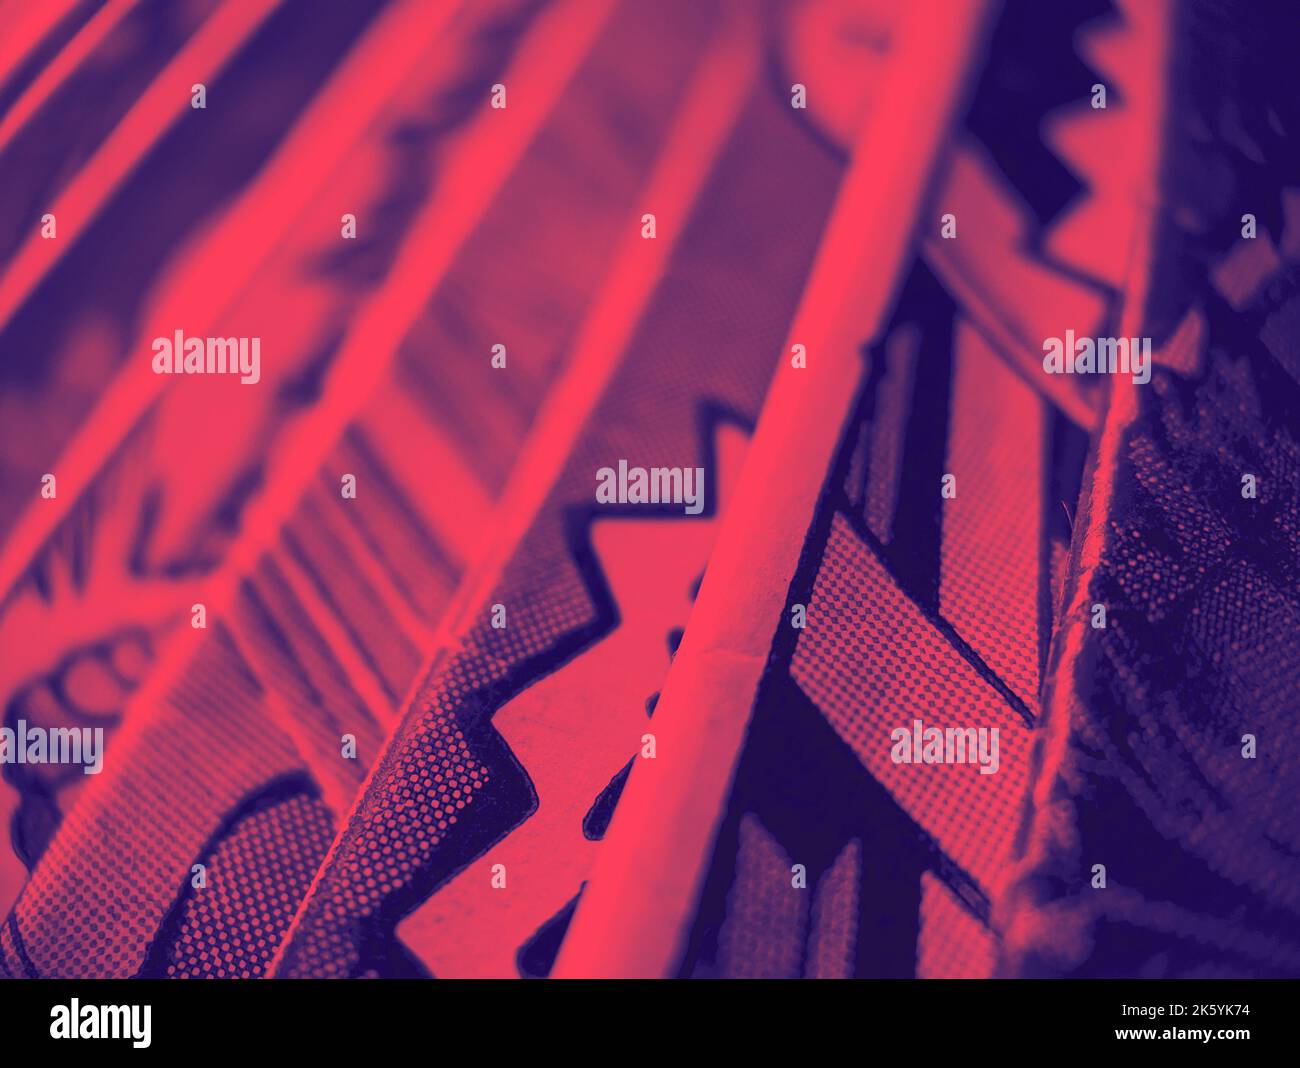 Die Nahaufnahme einer alten Comic-Sammlung erzeugt eine bunte Papiertextur im Hintergrund mit rot-blauem Duoton-Effekt Stockfoto